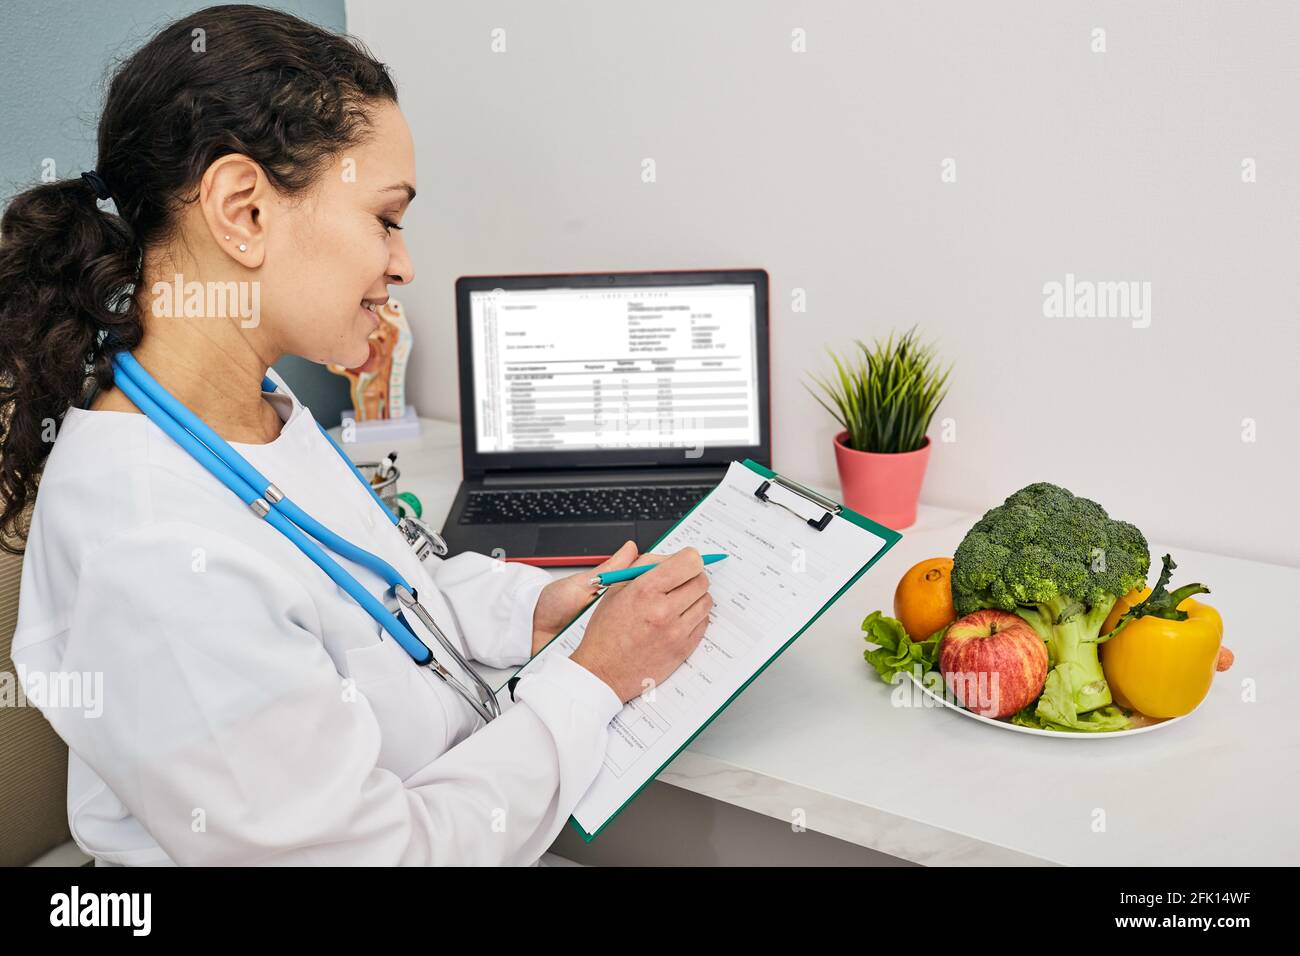 Ernährungsberaterin erstellt einen personalisierten Speiseplan für ihre Patientin. Gemüse und Obst für eine gesunde Ernährung Stockfoto